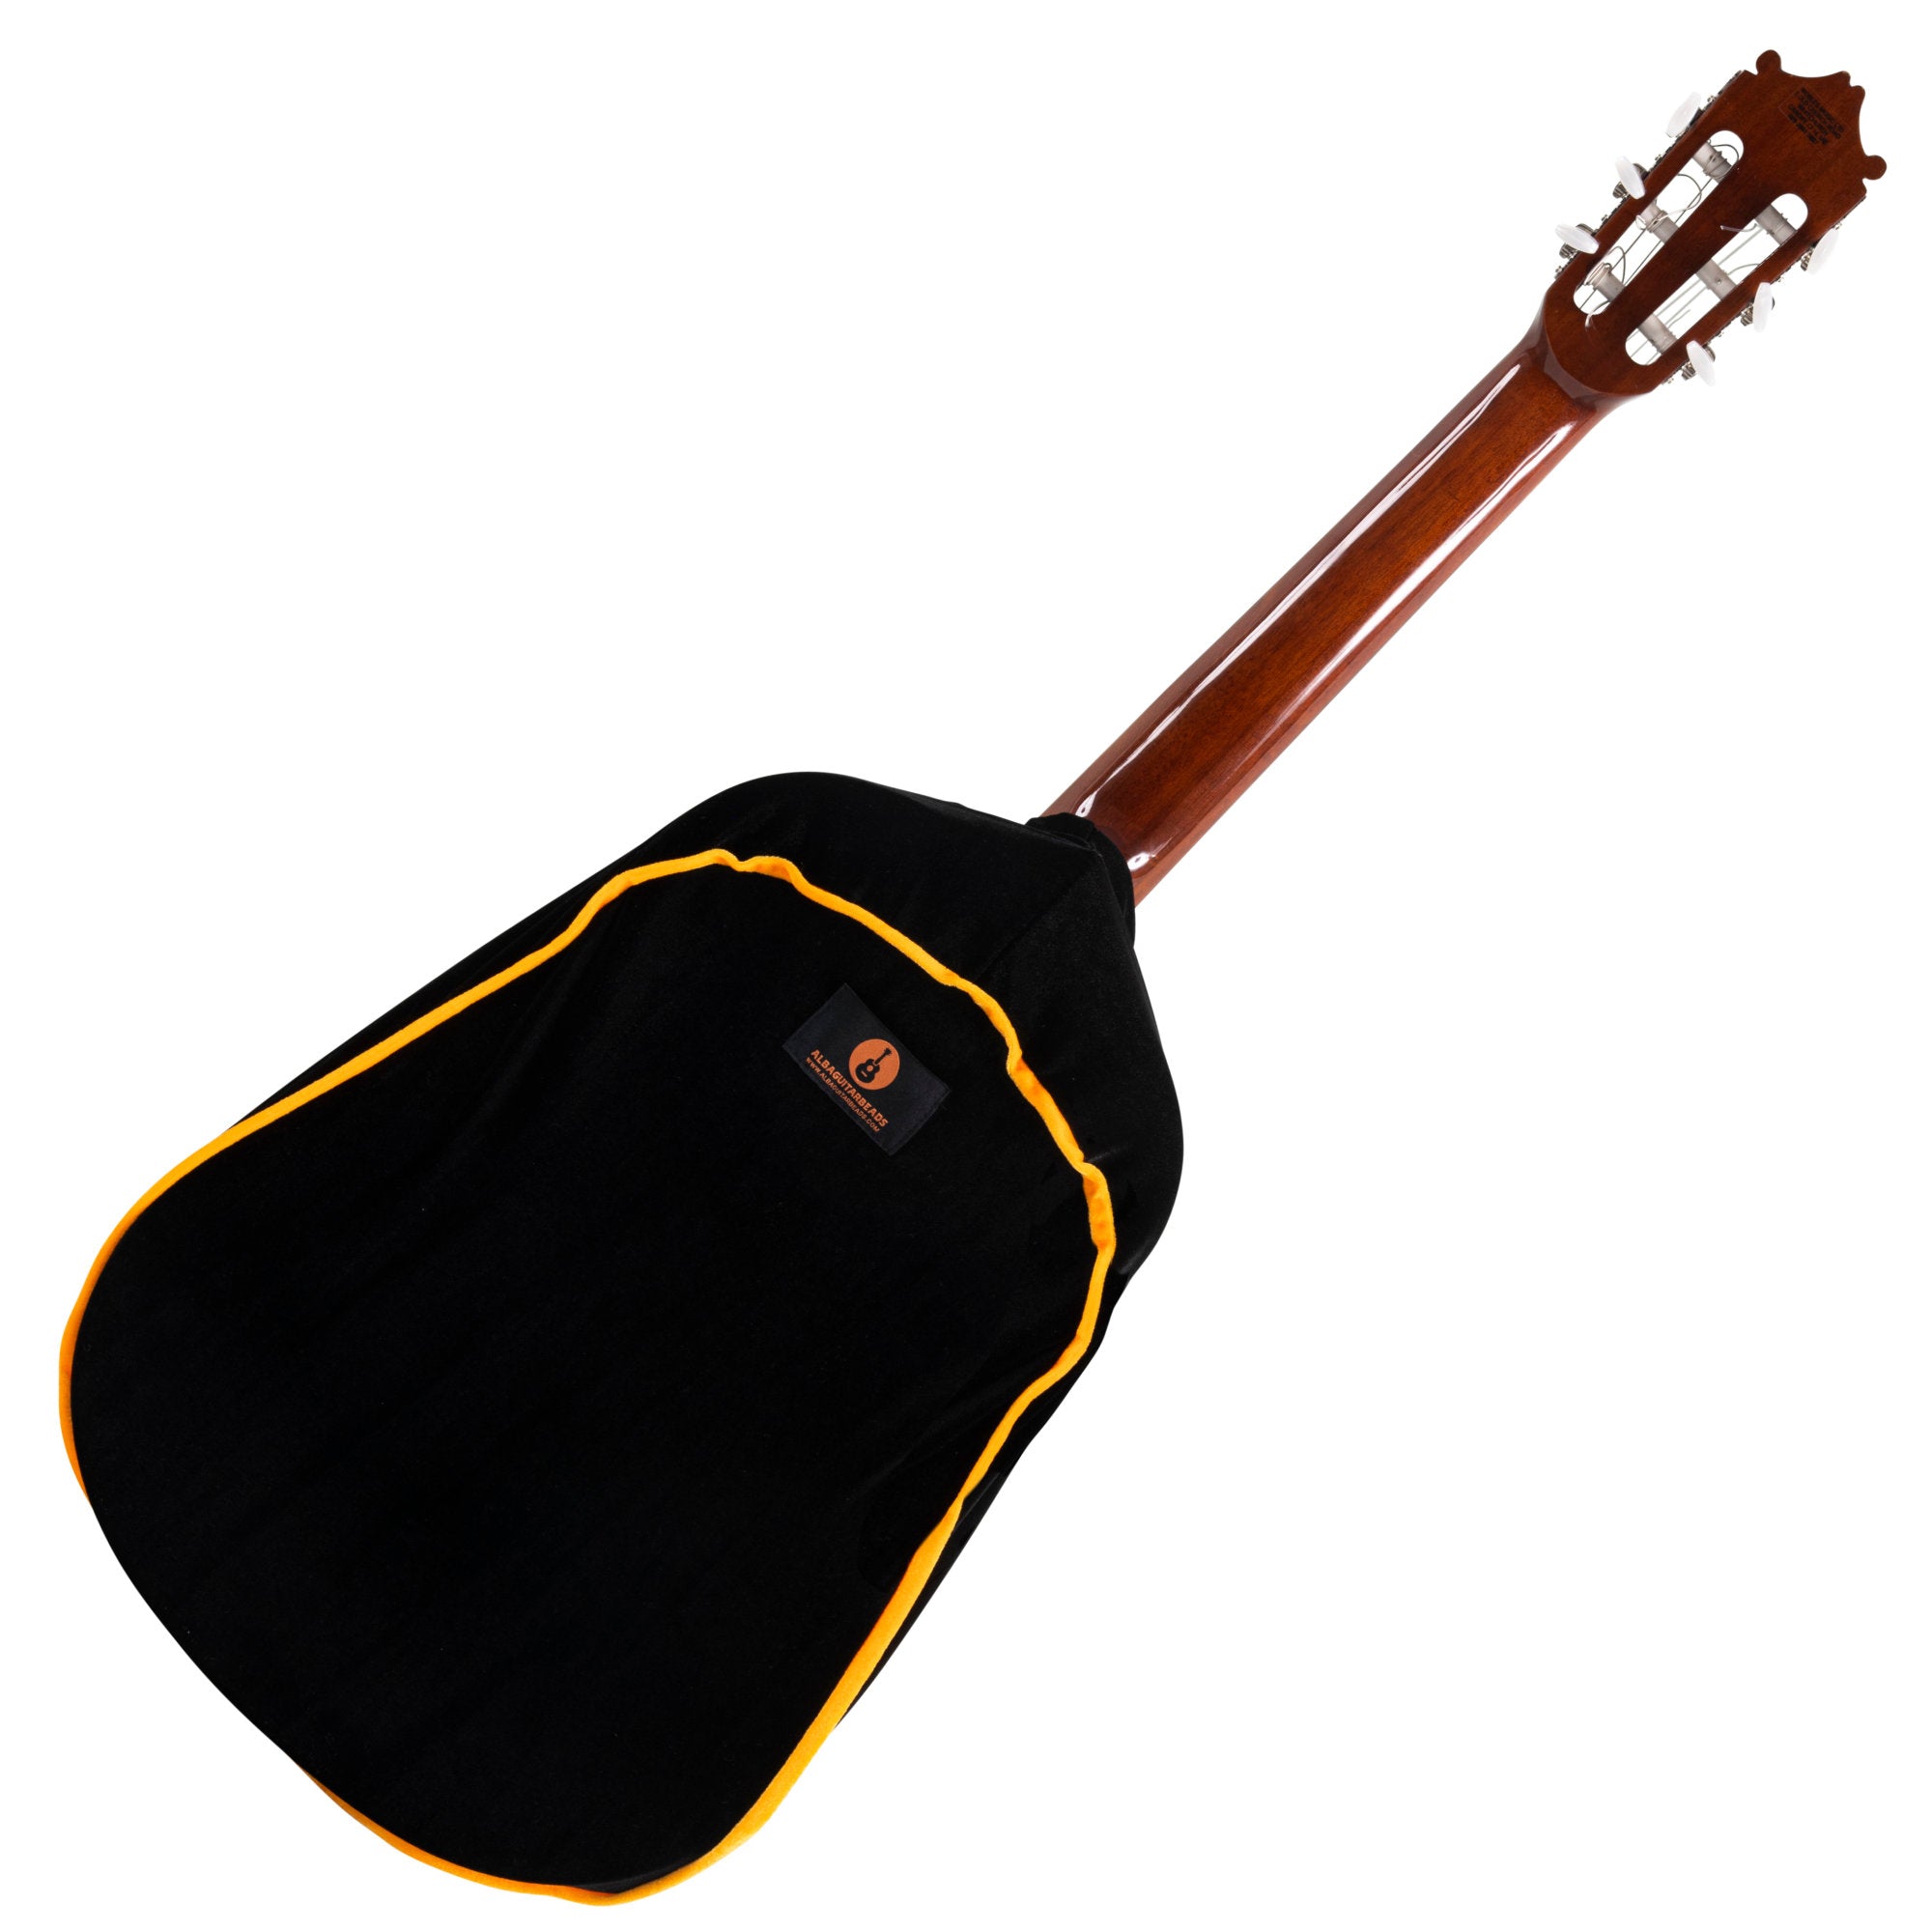 Alba Guitar Dust Cover - Invólucro protetor para guitarras clássicas, acústicas e elétricas